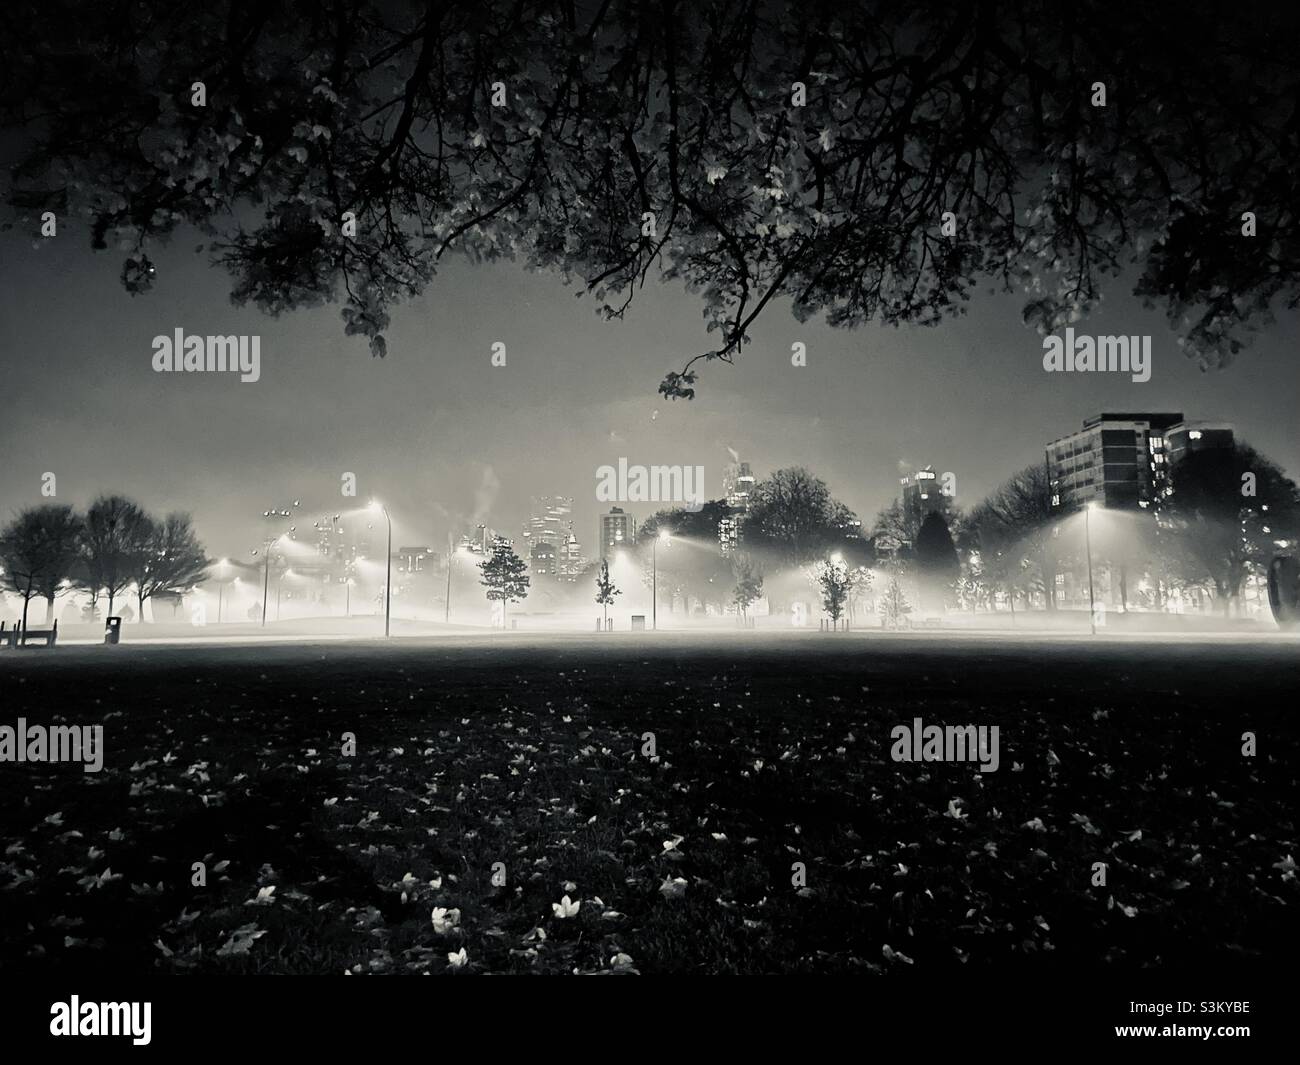 Parc de Londres lors d'une nuit brumeuse, prise en noir et blanc, feuilles sur le sol regardant allumé et les lumières éclairant le brouillard sur le sol Banque D'Images